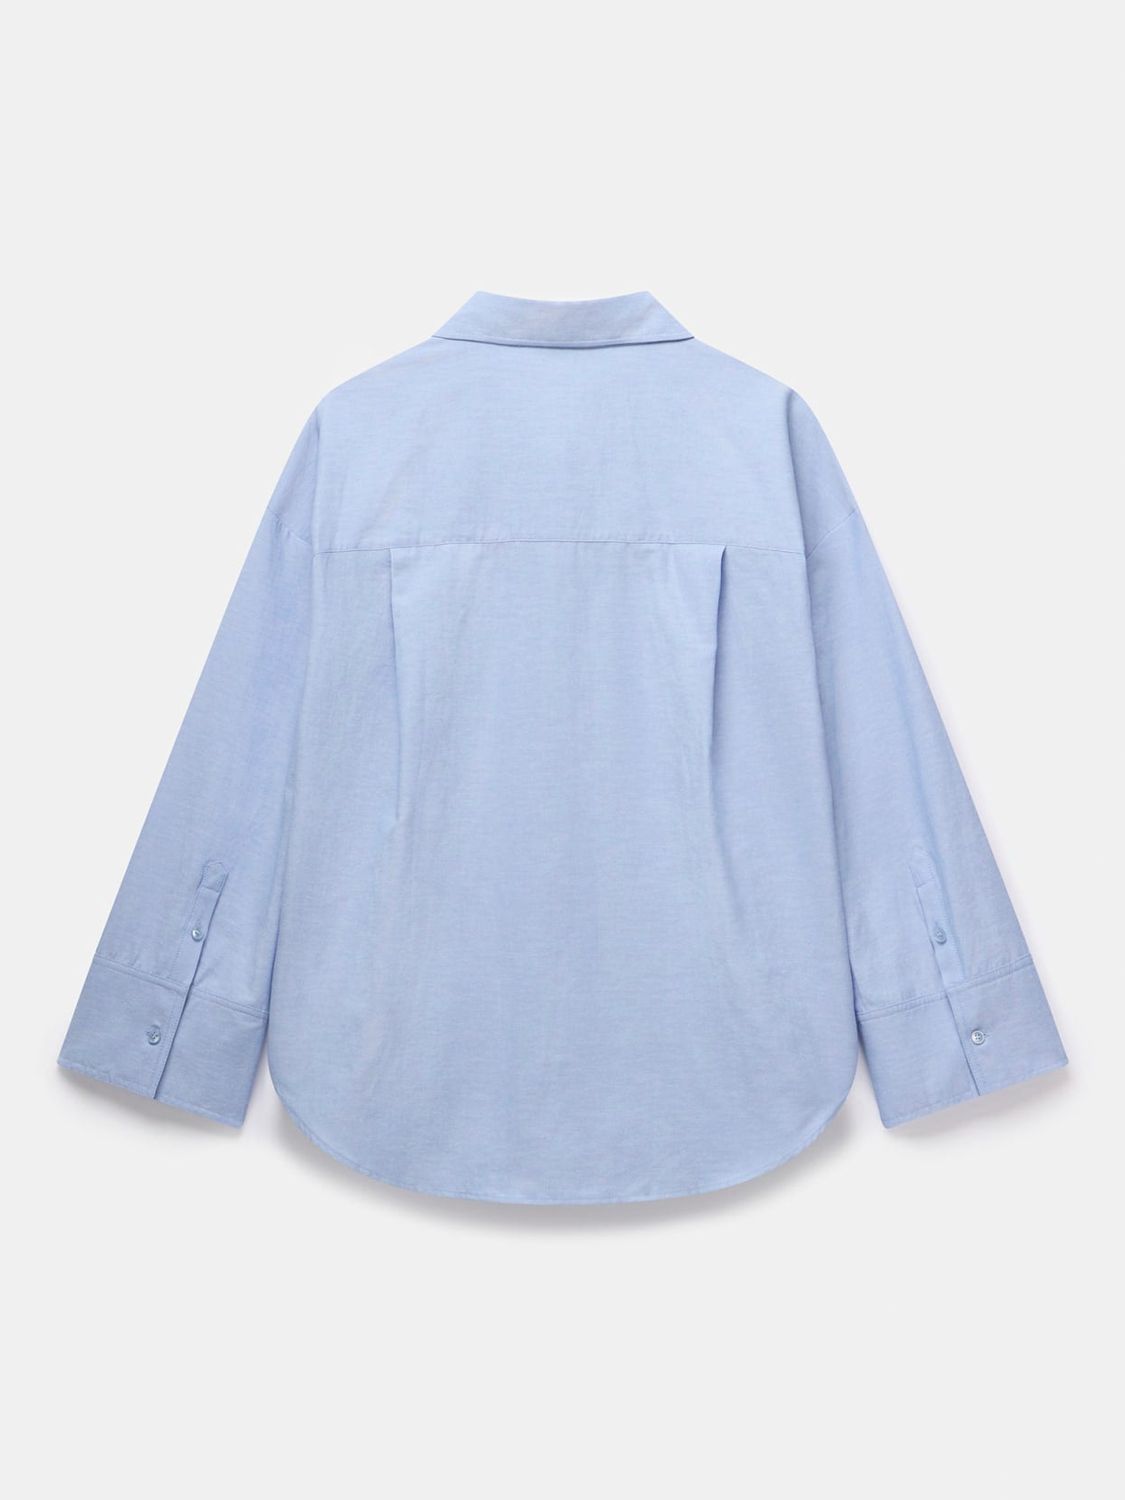 Mint Velvet Oversized Longline Shirt, Blue, L